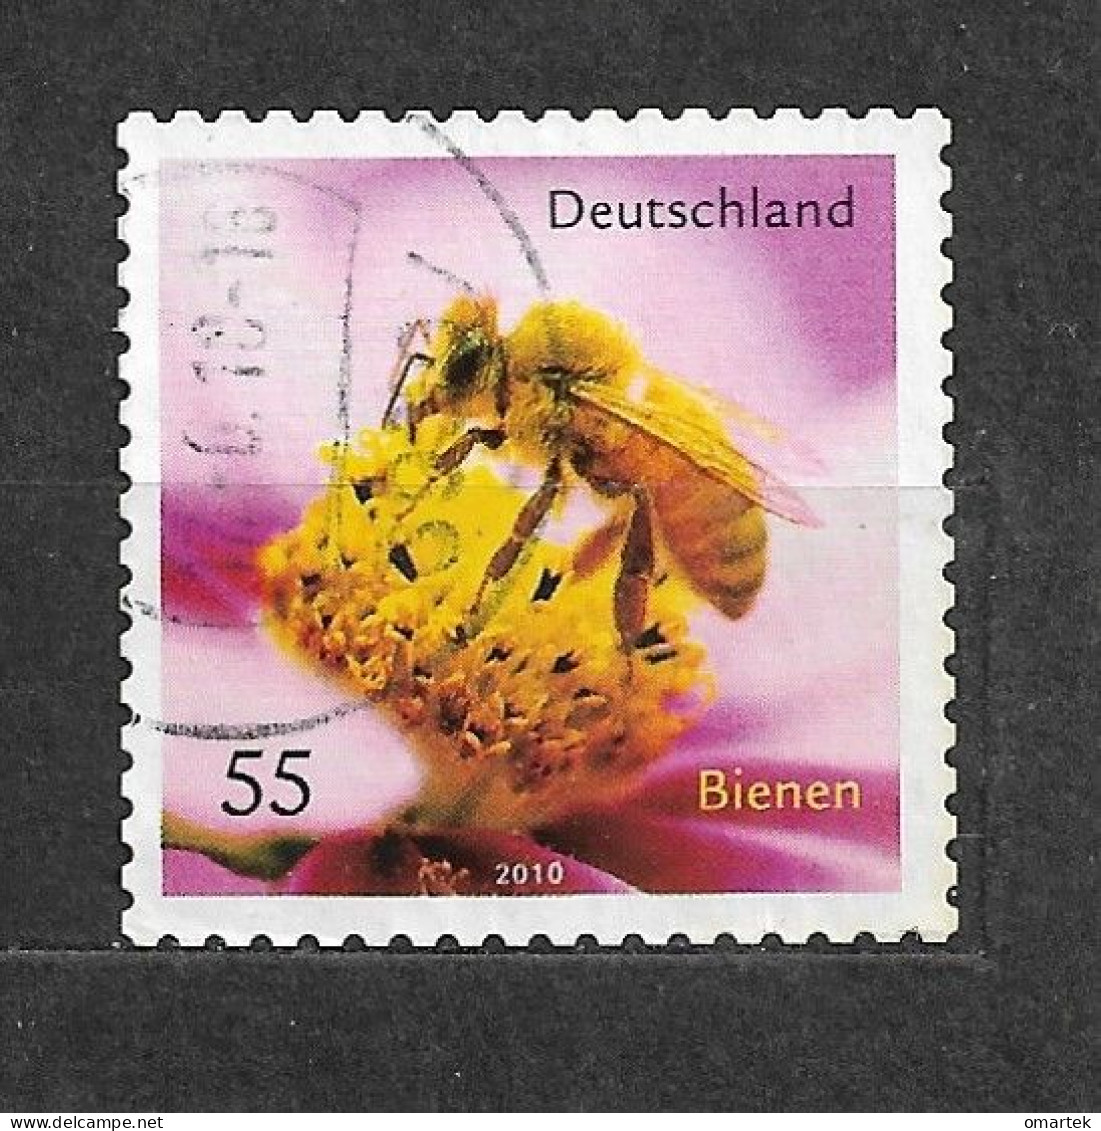 Deutschland Germany BRD 2010 ⊙ Mi 2799 Bienen. Honey Bee. - Gebruikt